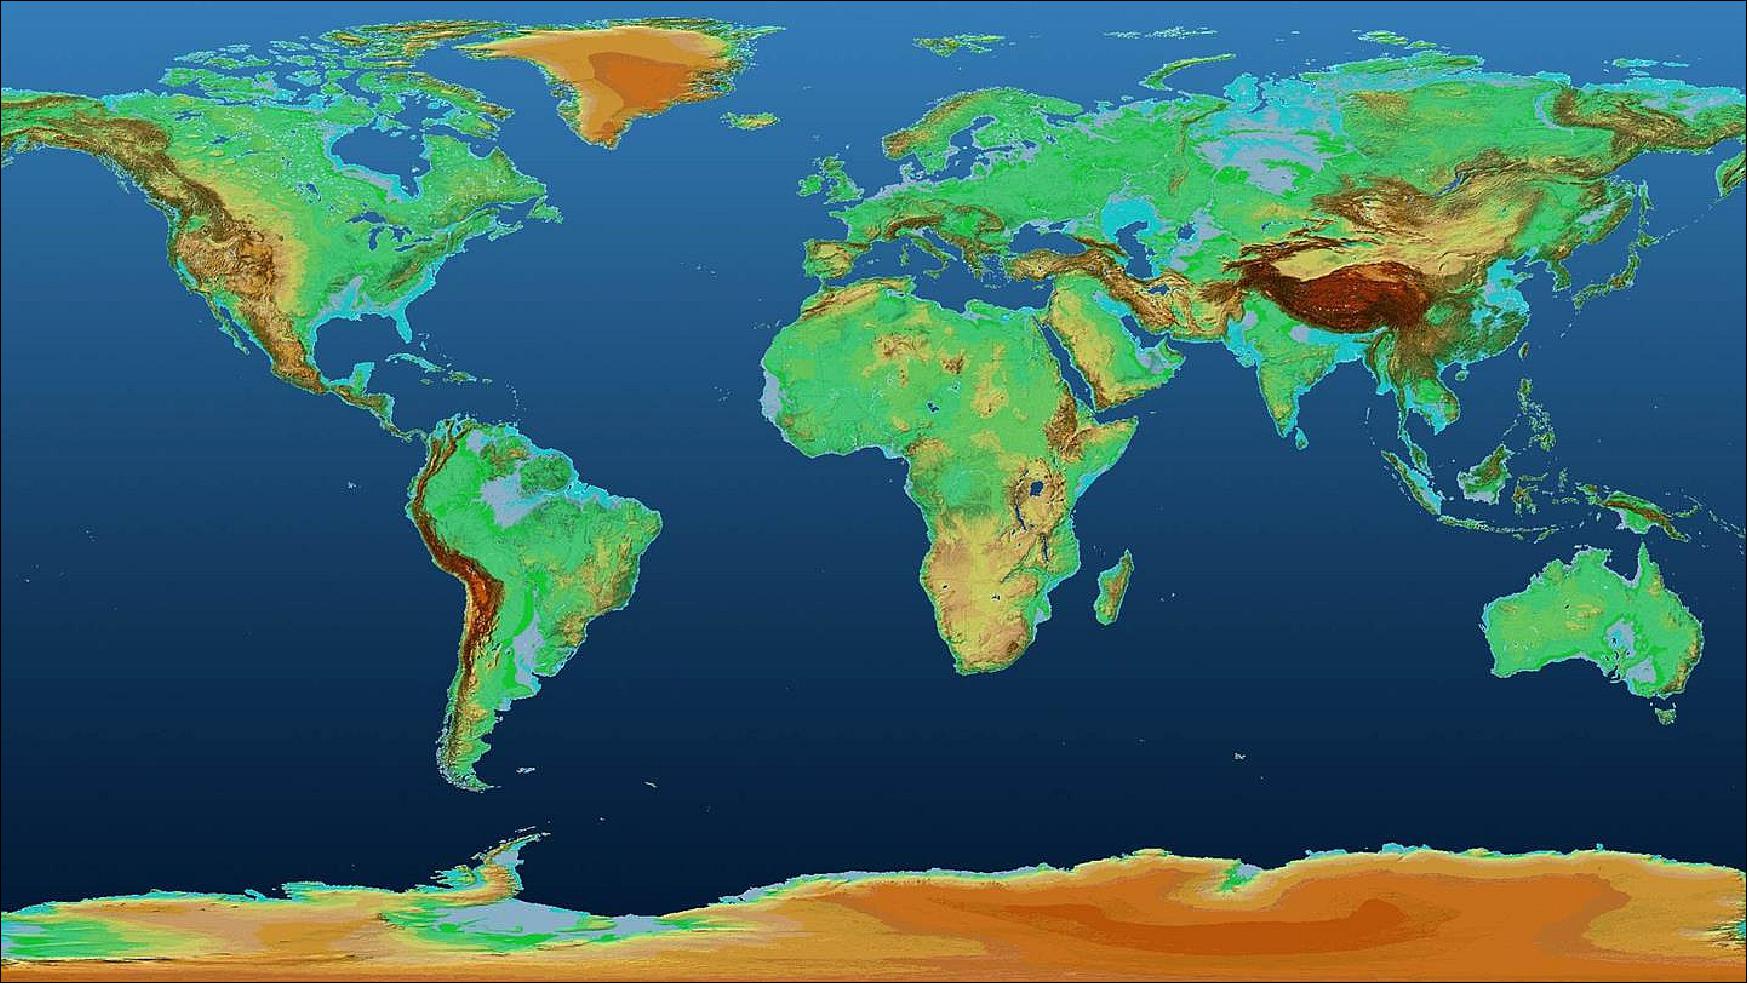 Figure 32: Global TanDEM-X Digital Elevation Model (image credit: DLR)